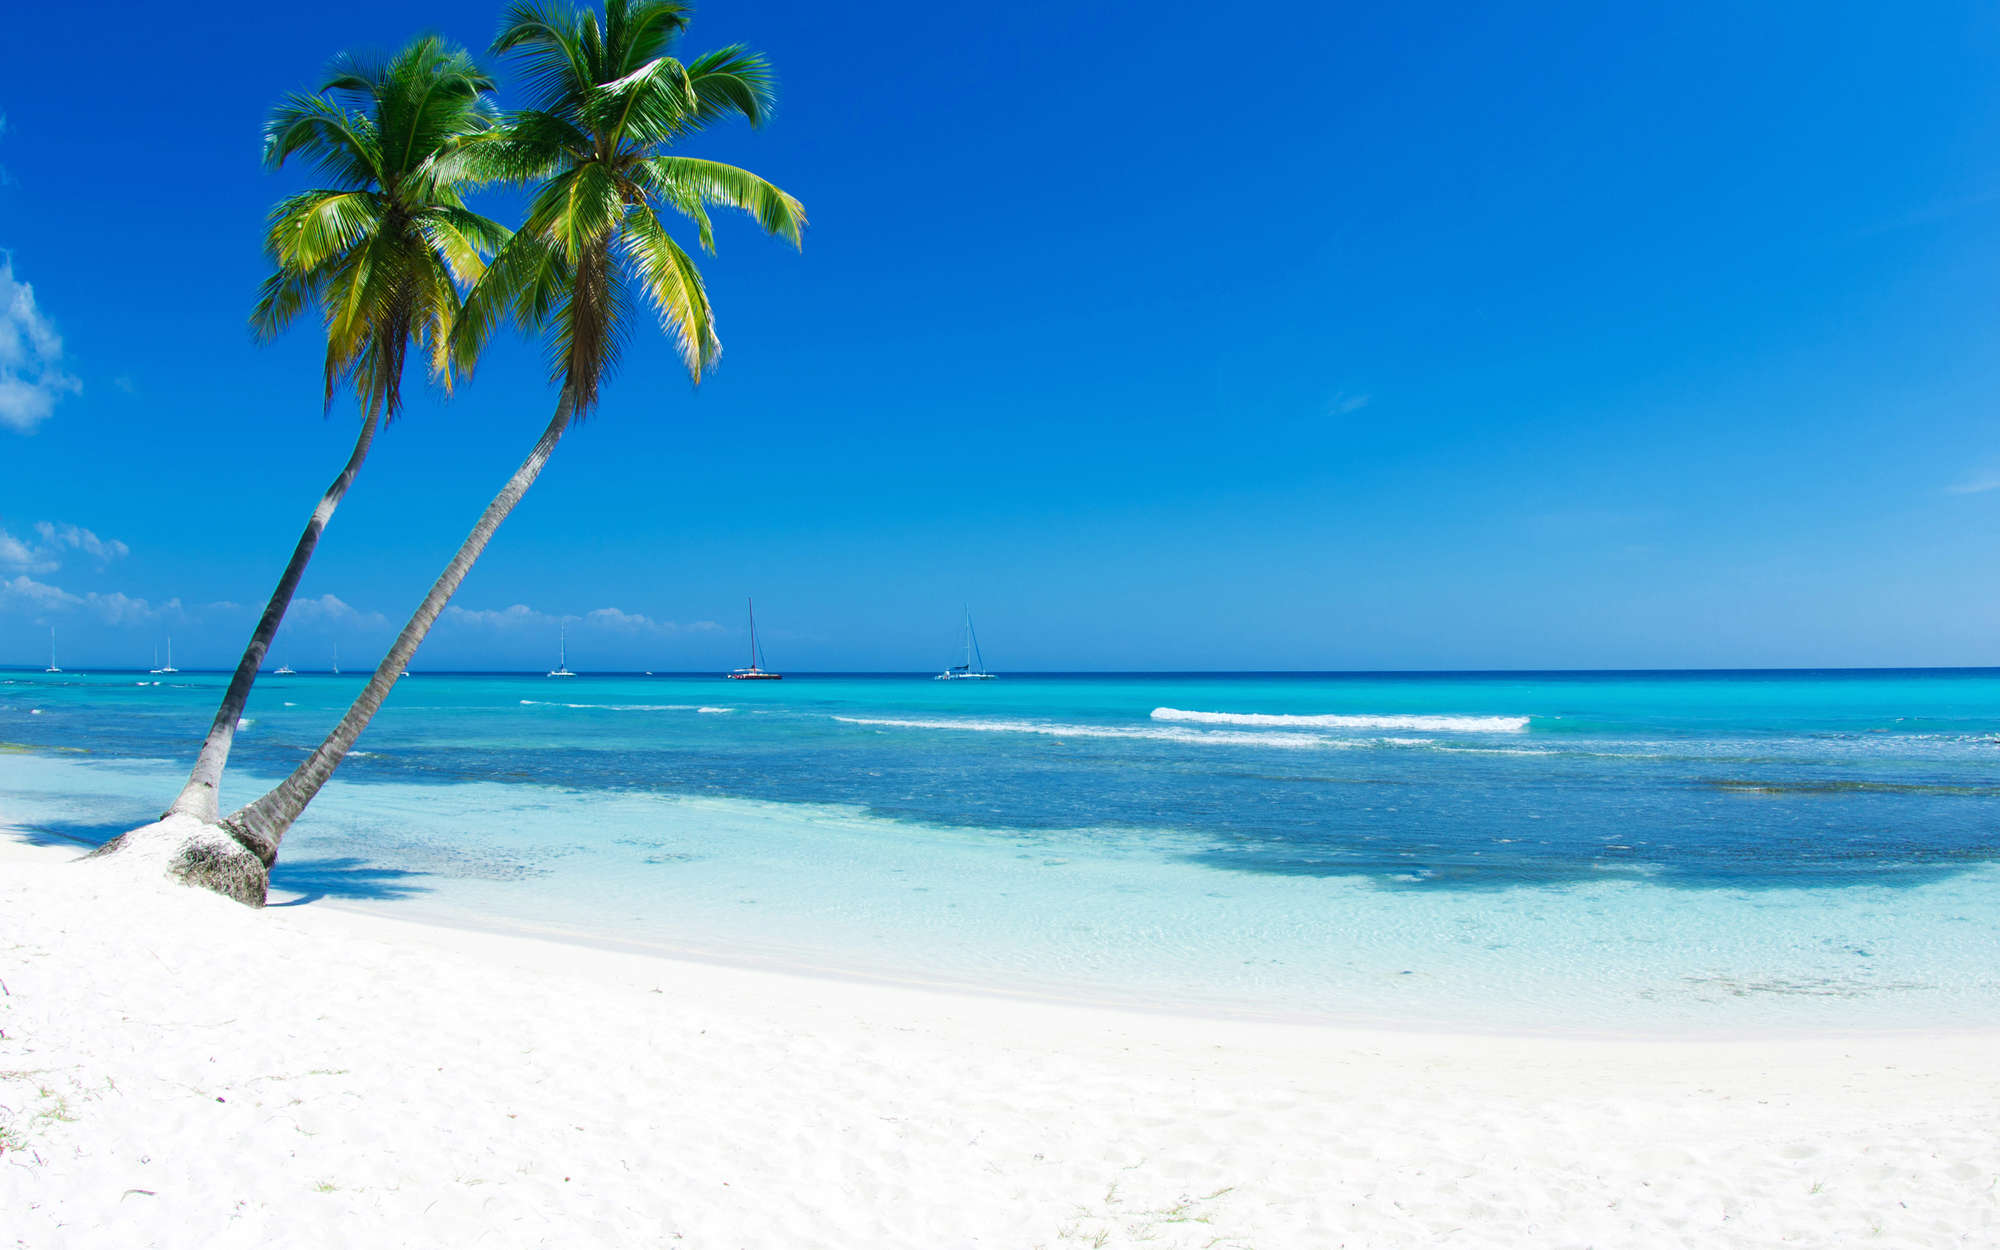             Fotomural playa de arena blanca con palmera - tejido no tejido liso de alta calidad
        